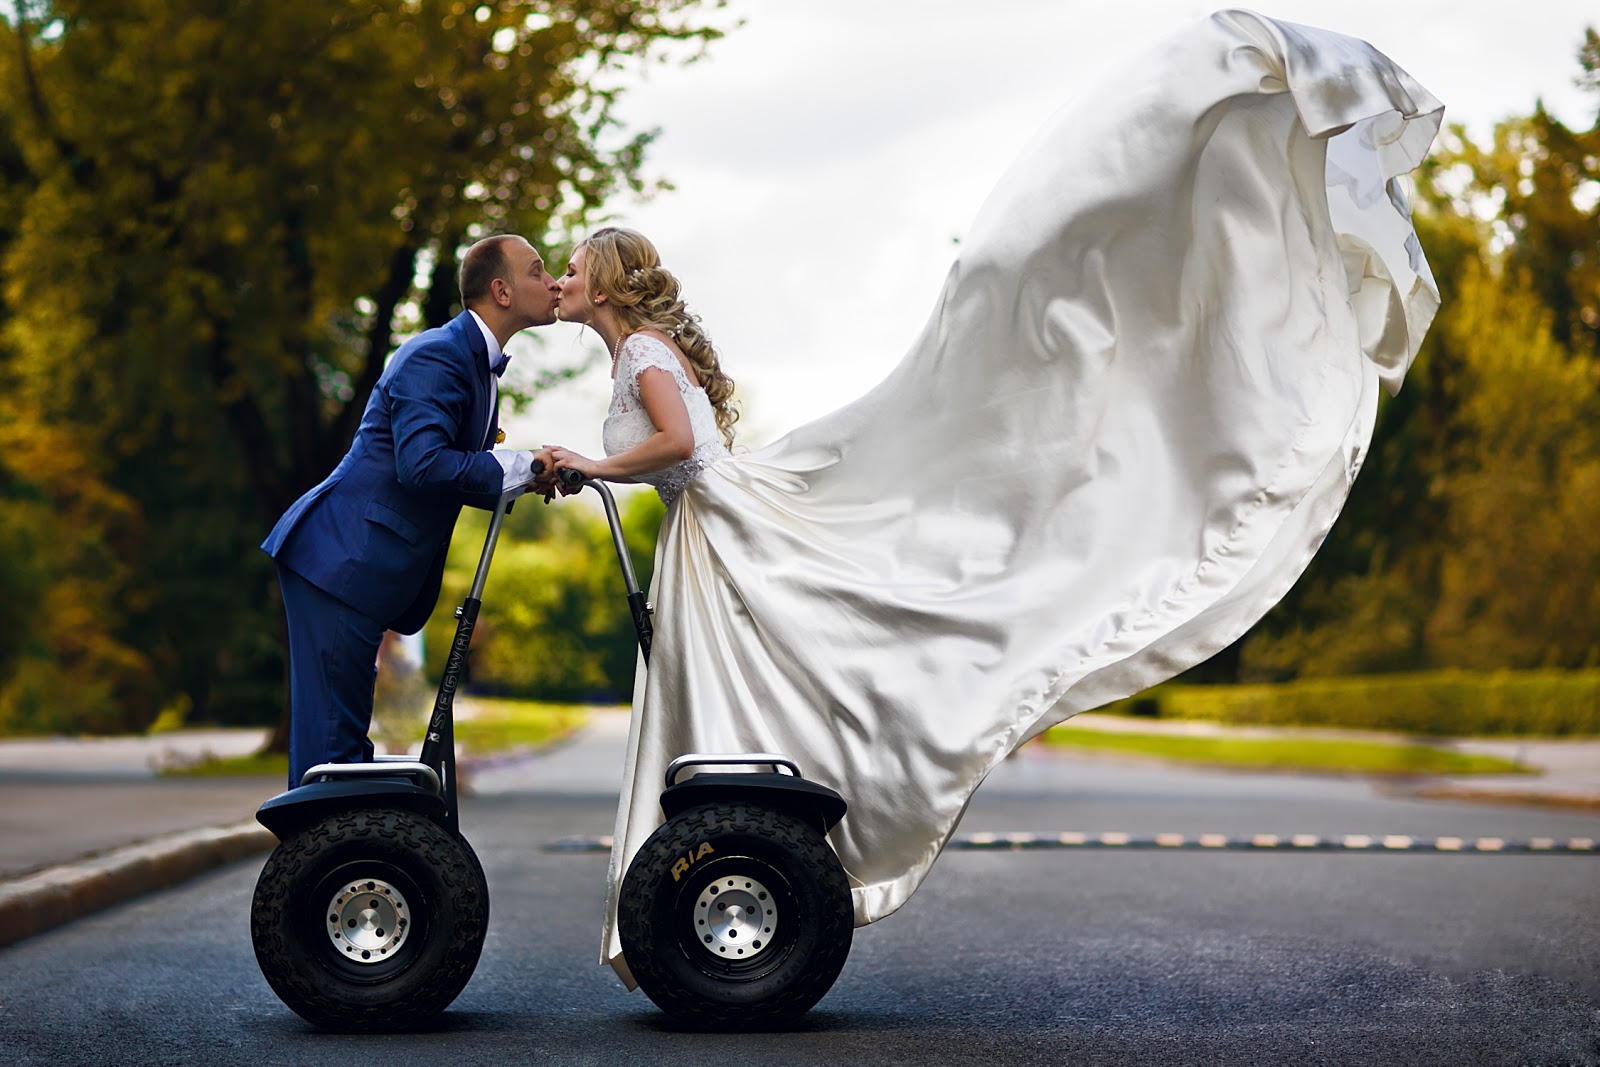 100 оригинальных идей для свадебных фото и фотосессий